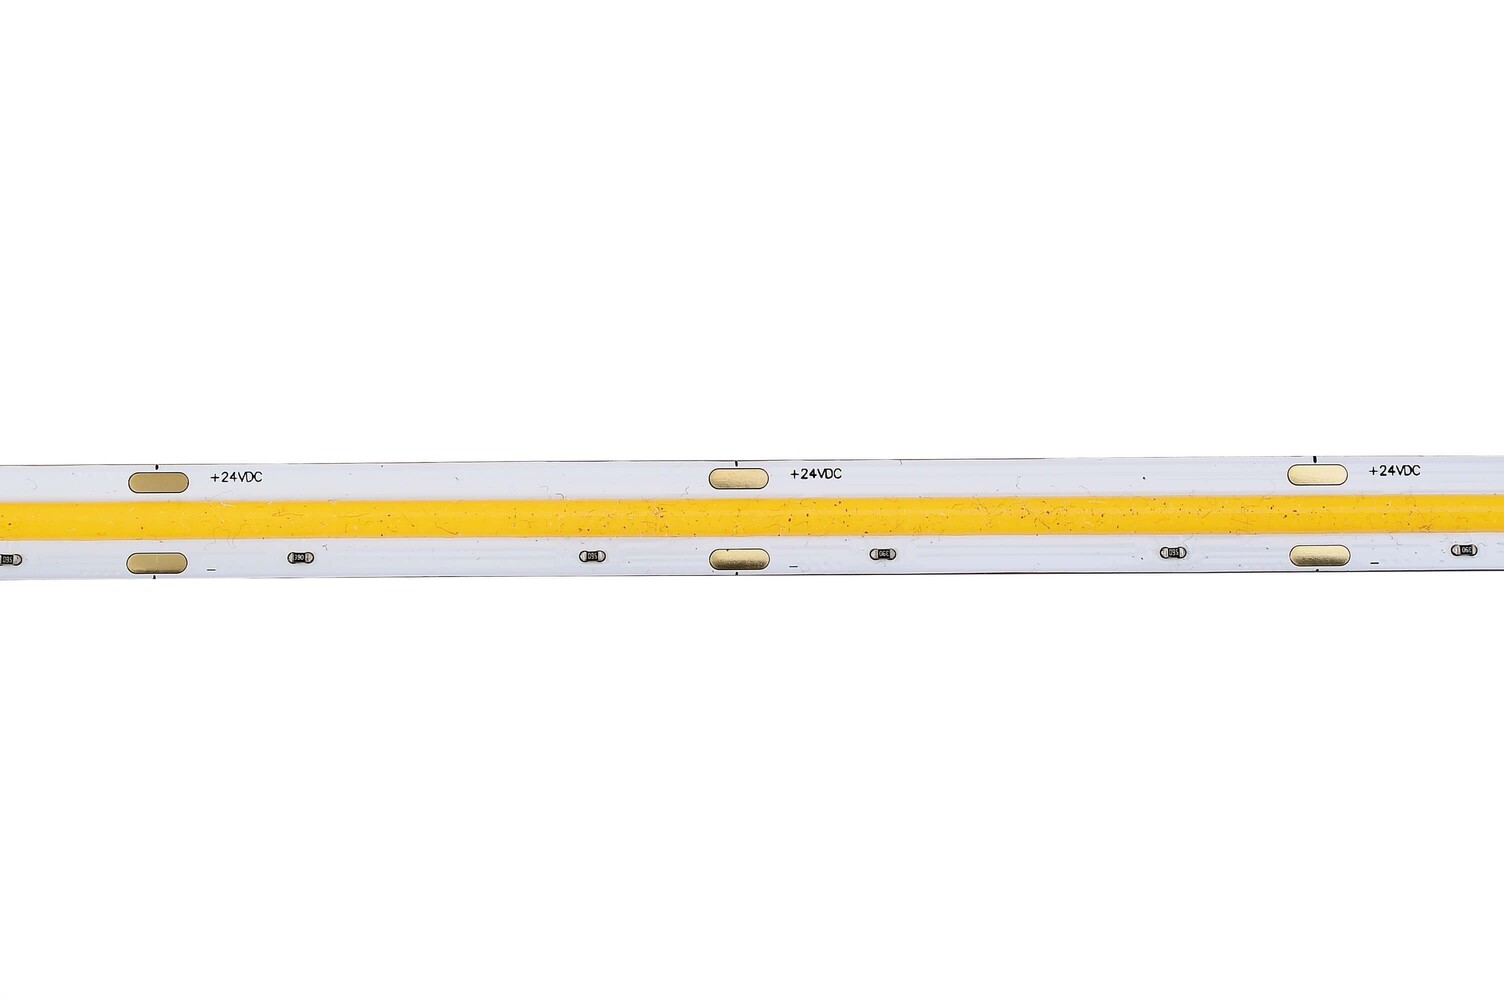 Flexibler leuchtender LED Streifen von der Marke Deko-Light in kühlem 4000K Farbtemperatur